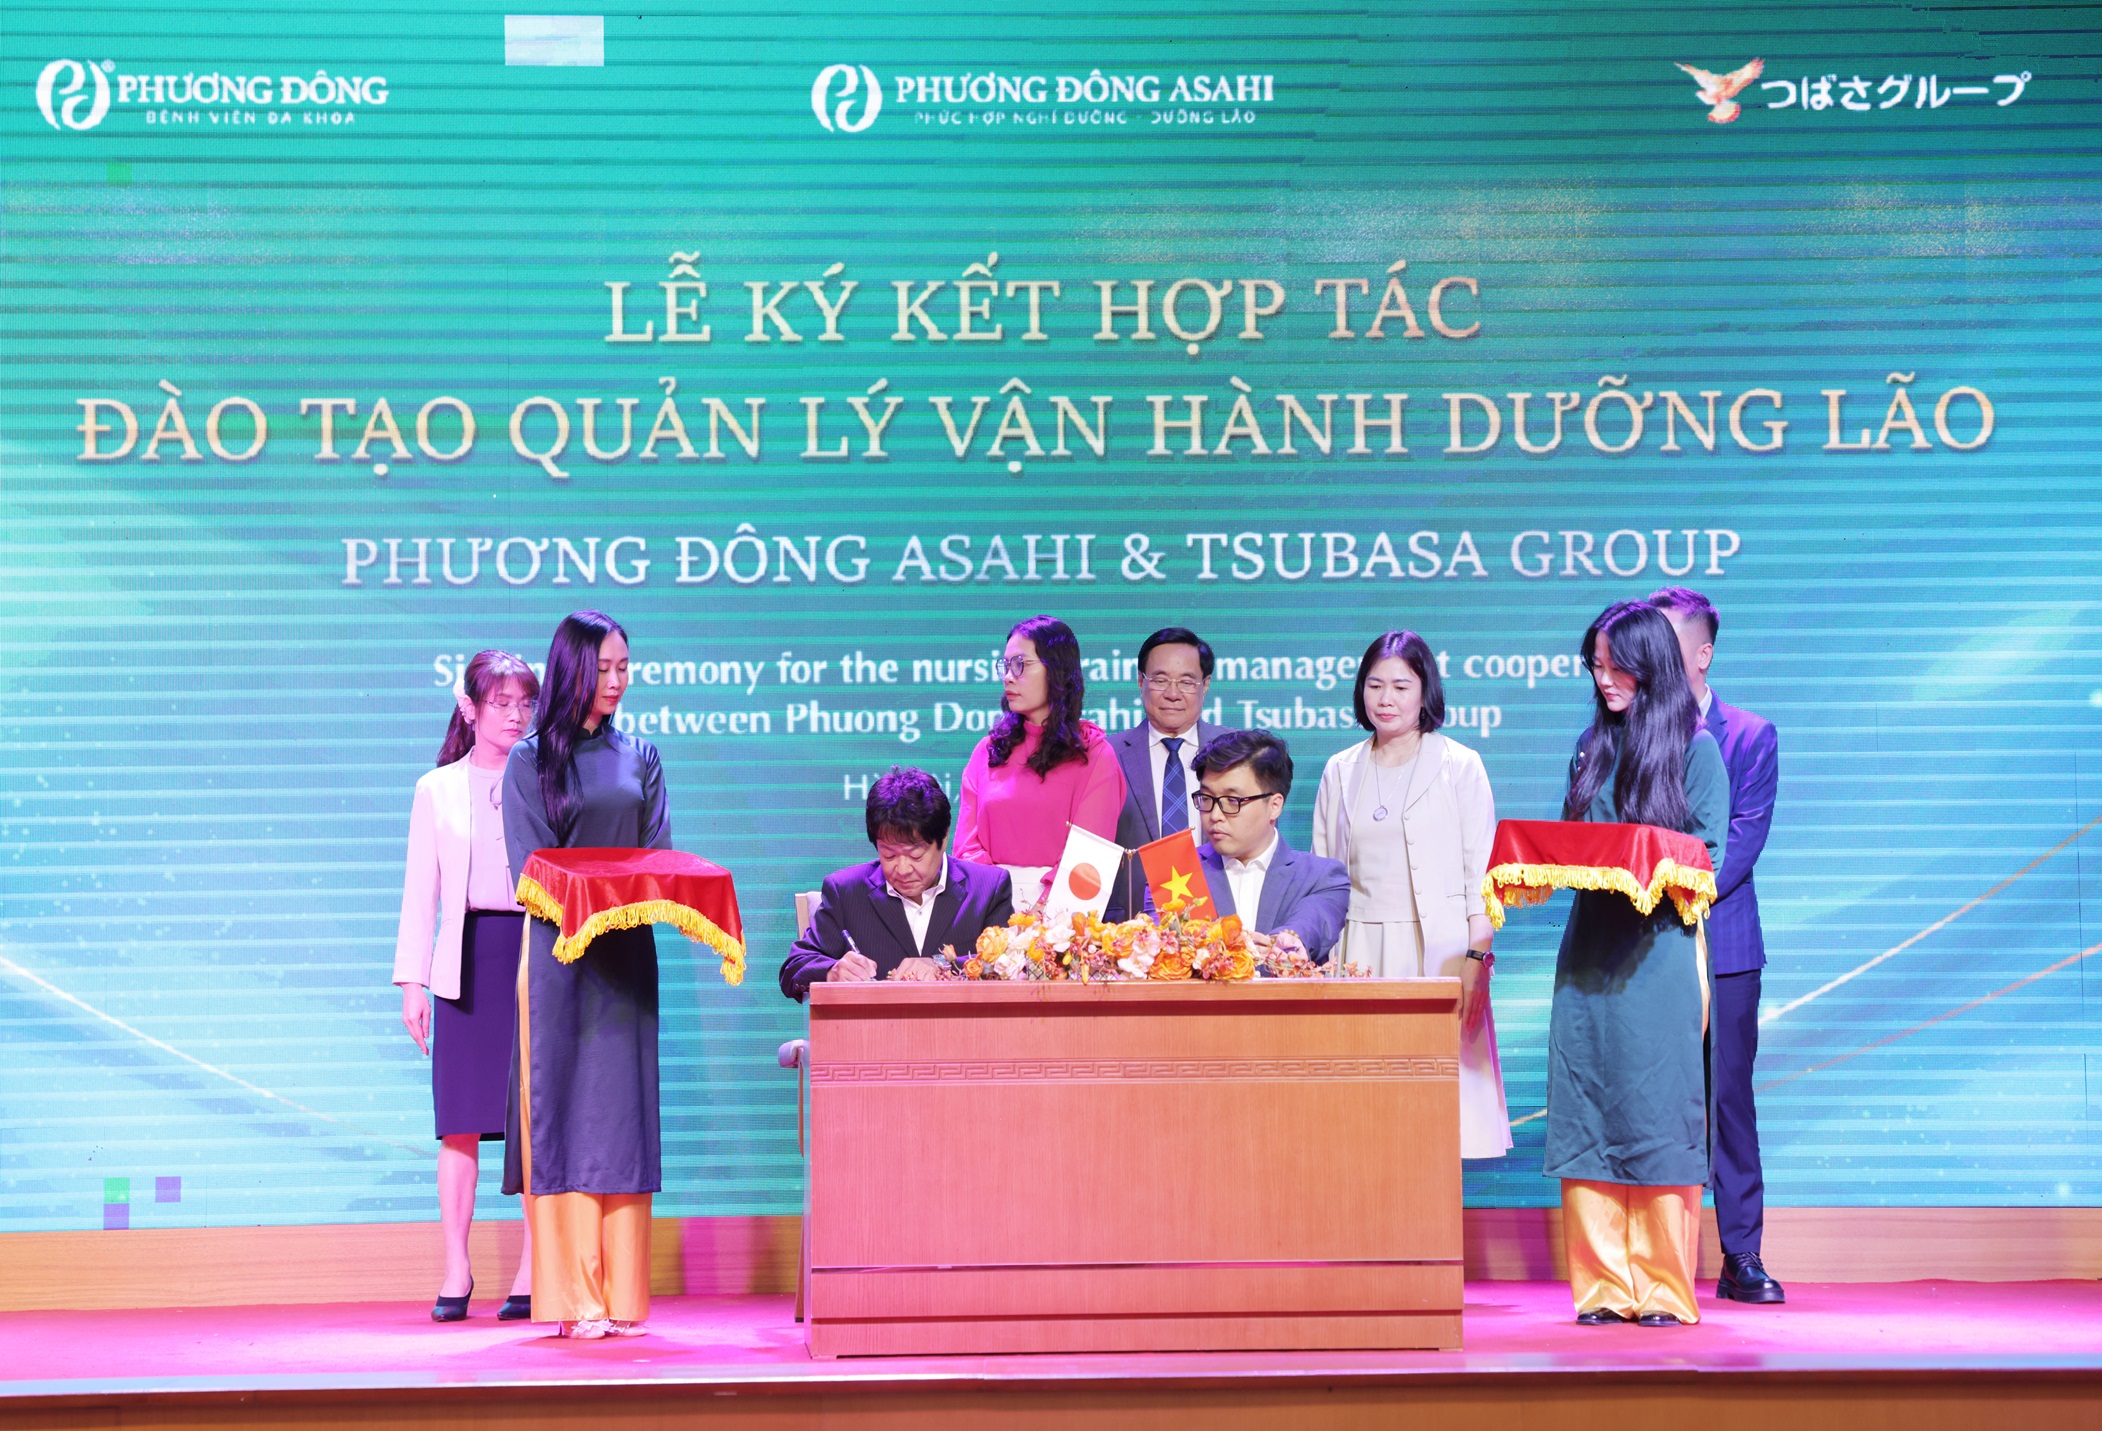 Phương Đông Asahi tiên phong trong quản lý vận hành dưỡng lão cao cấp tại Việt Nam